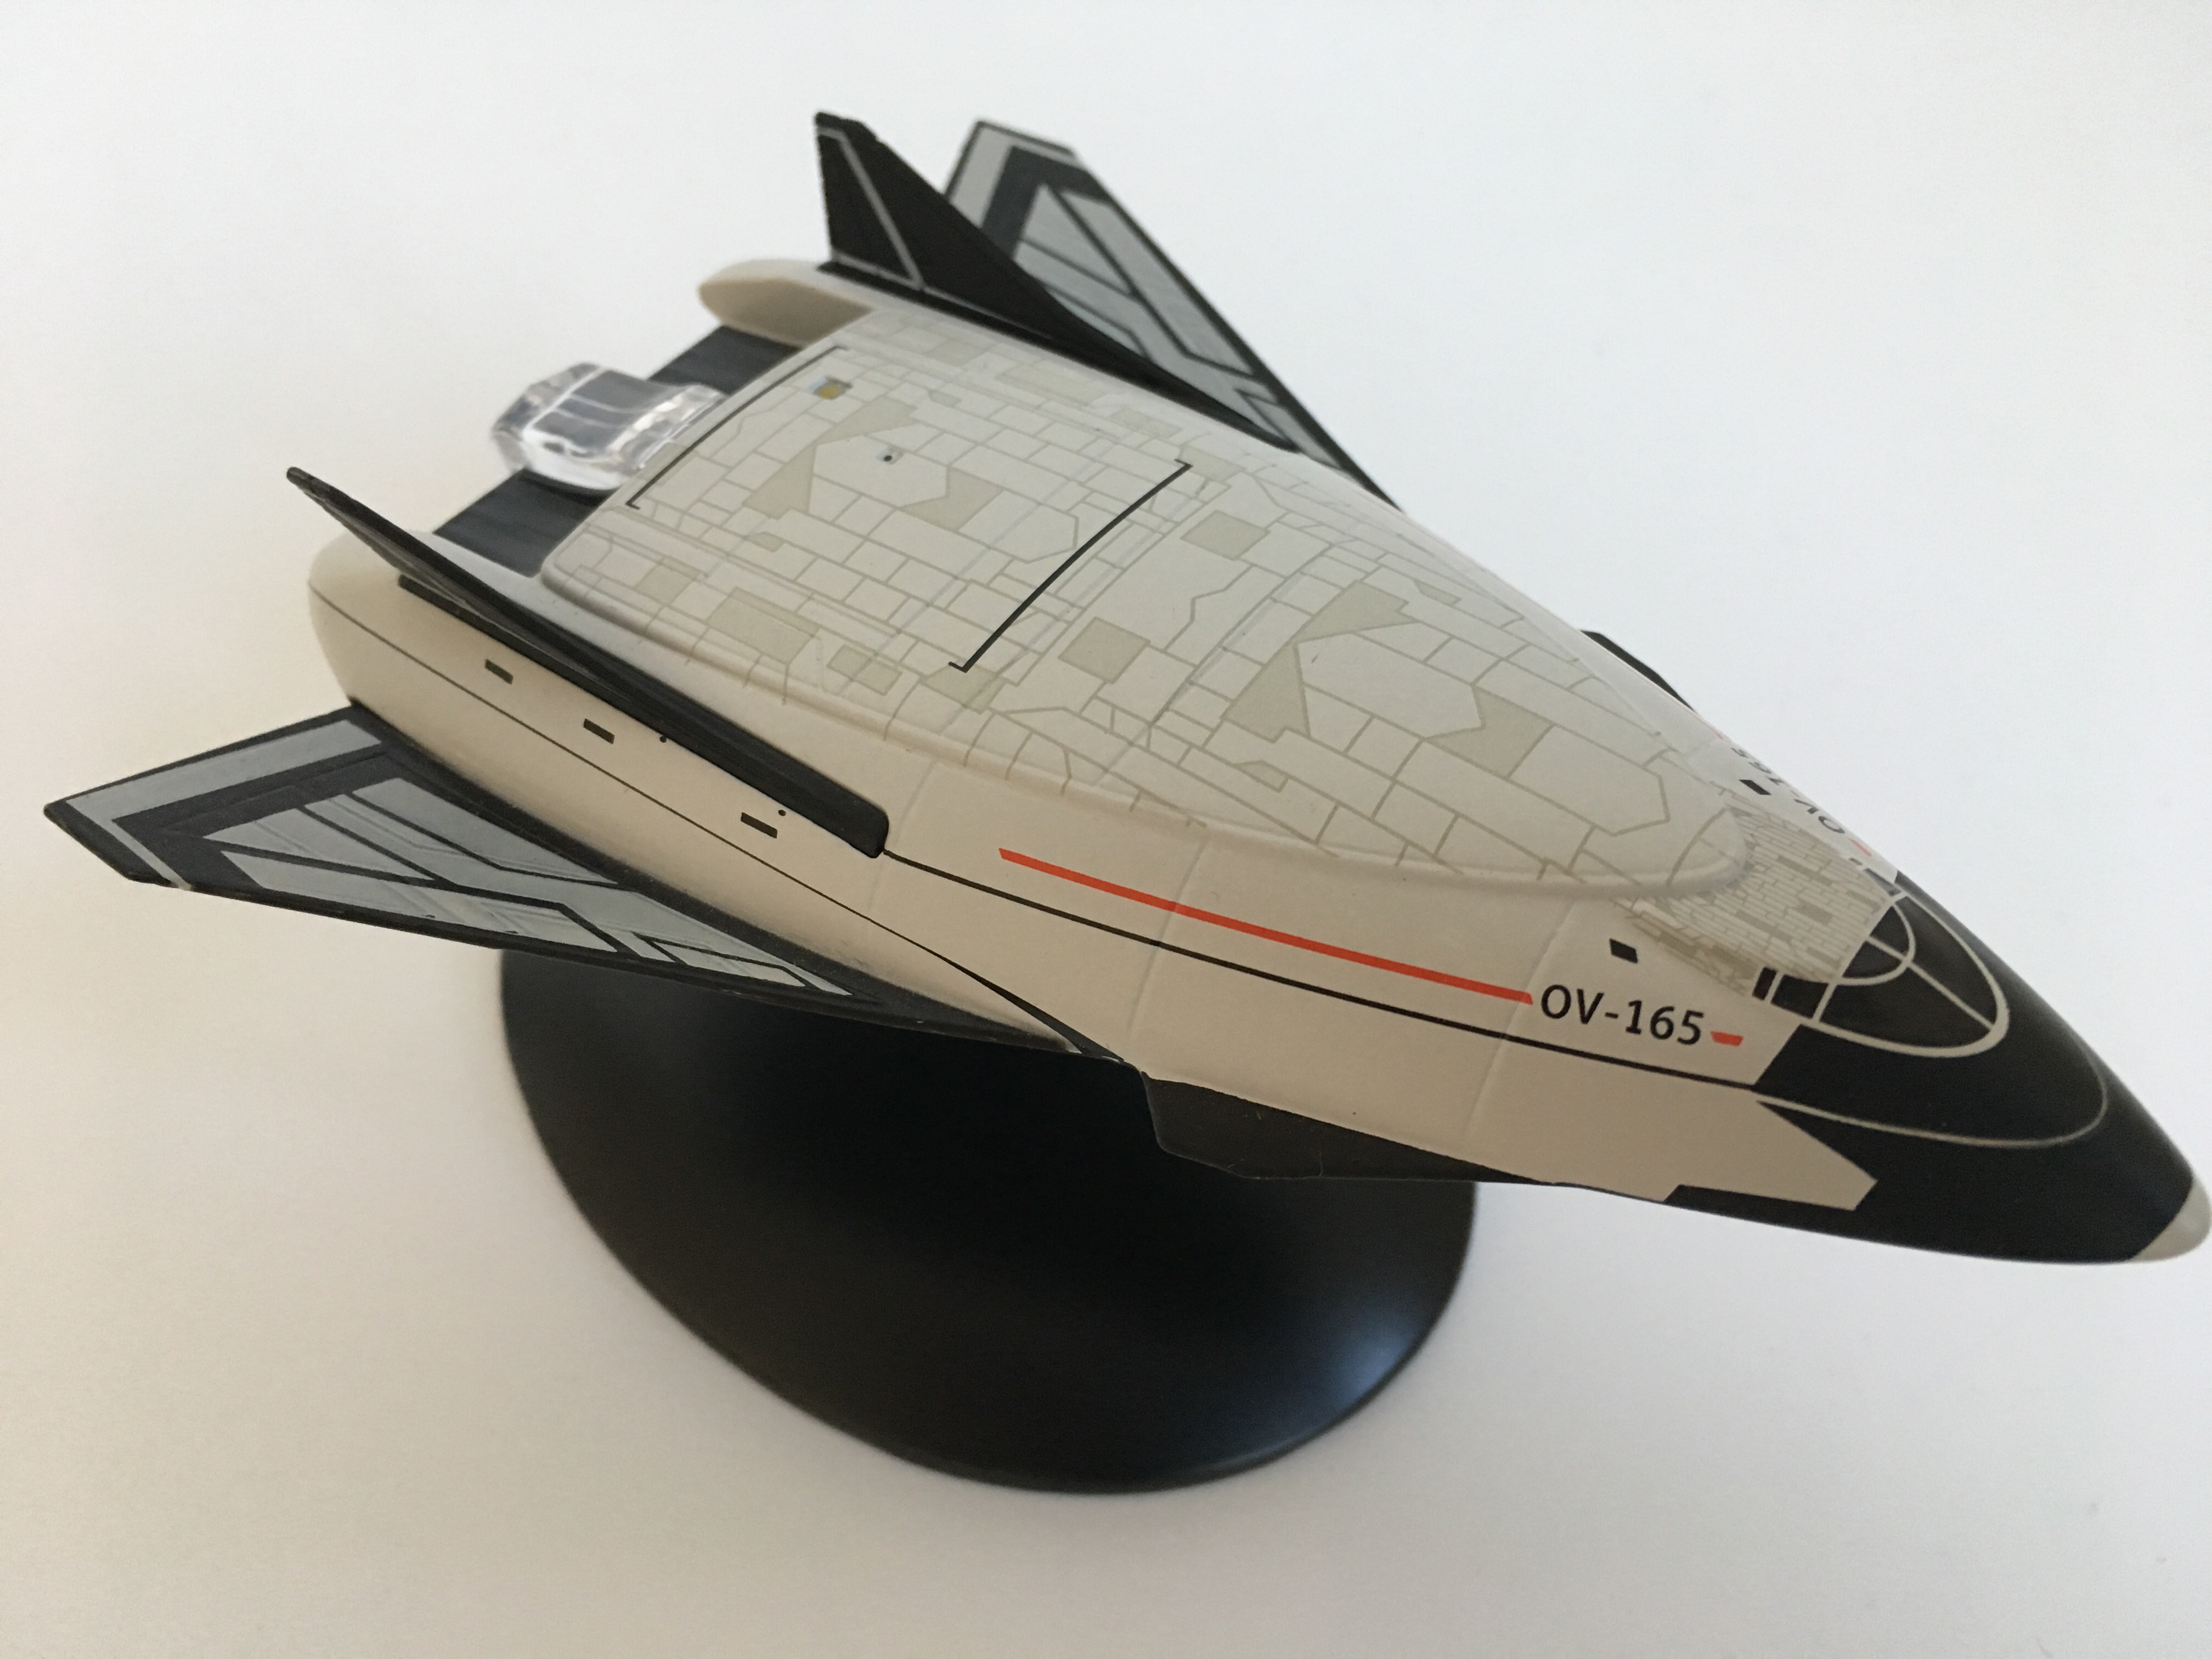 Das Spaceshuttle OV-165. Foto: Star Trek HD